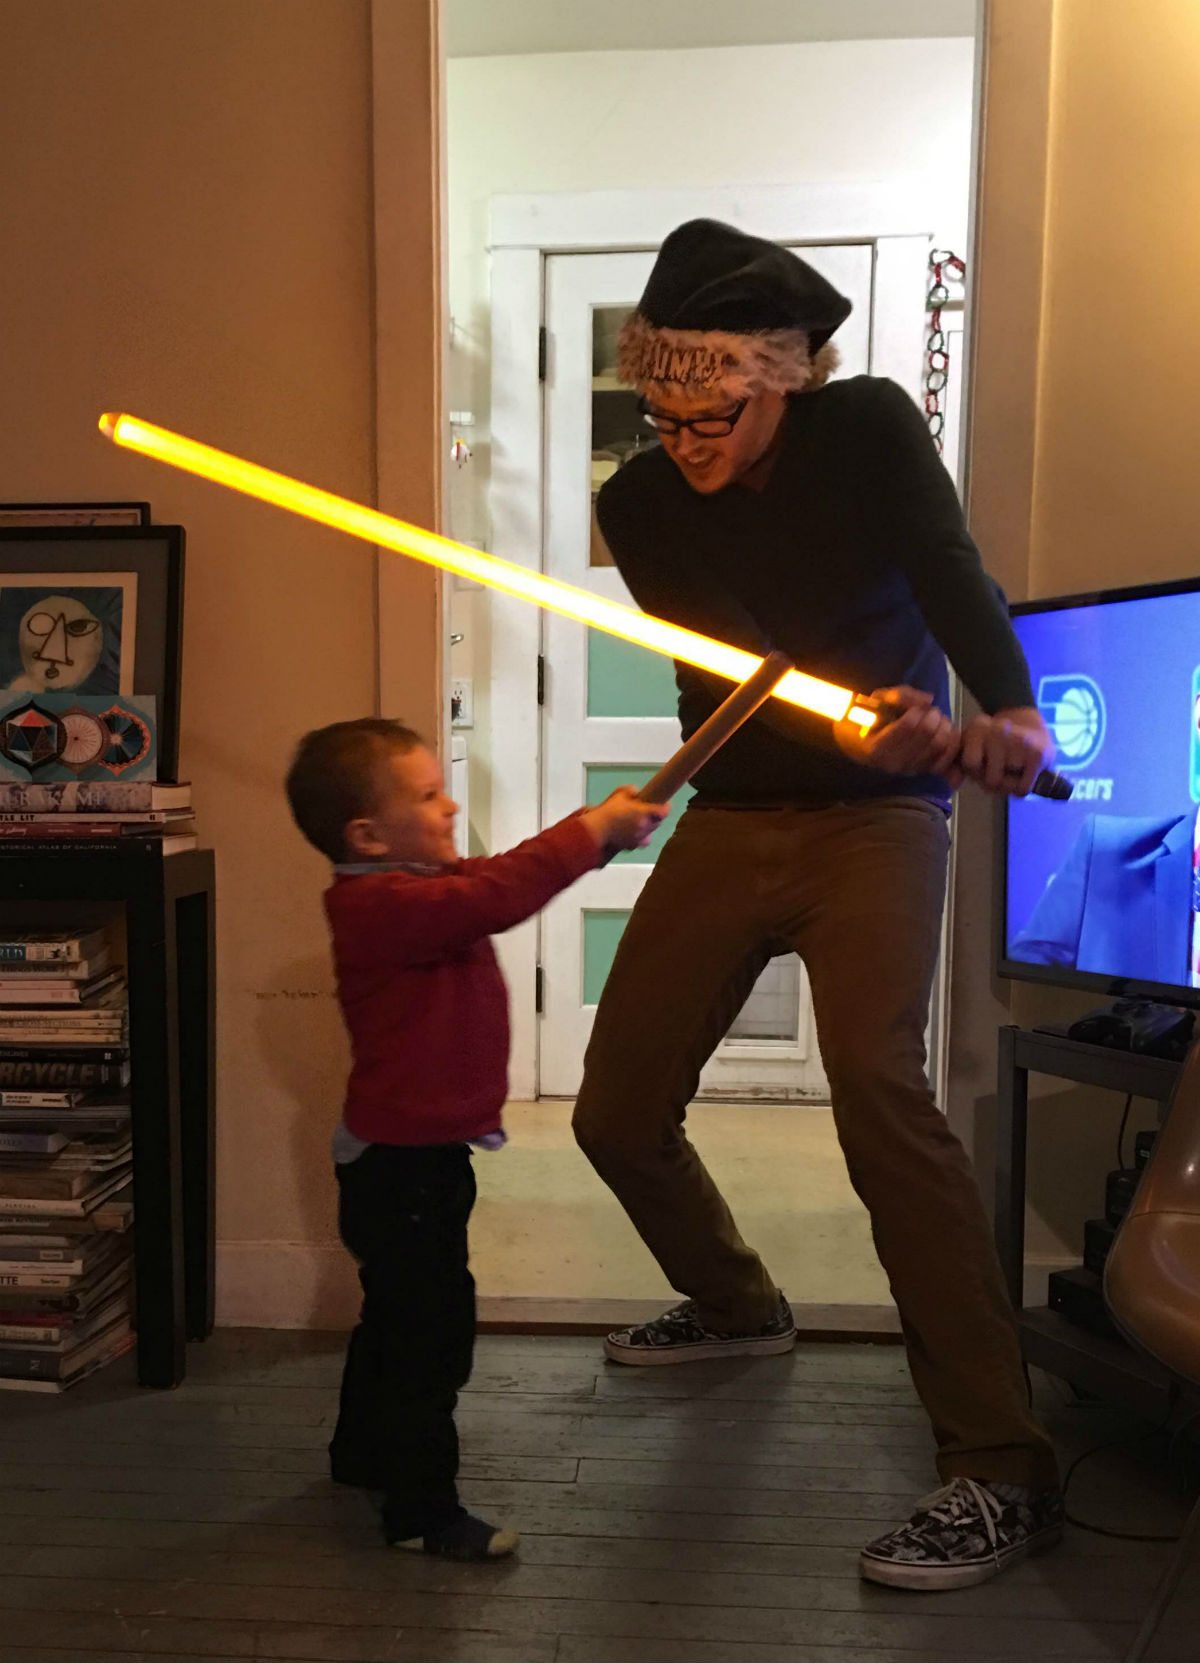 Proper light saber technique: don't hit the TV! Photo by Sarah James